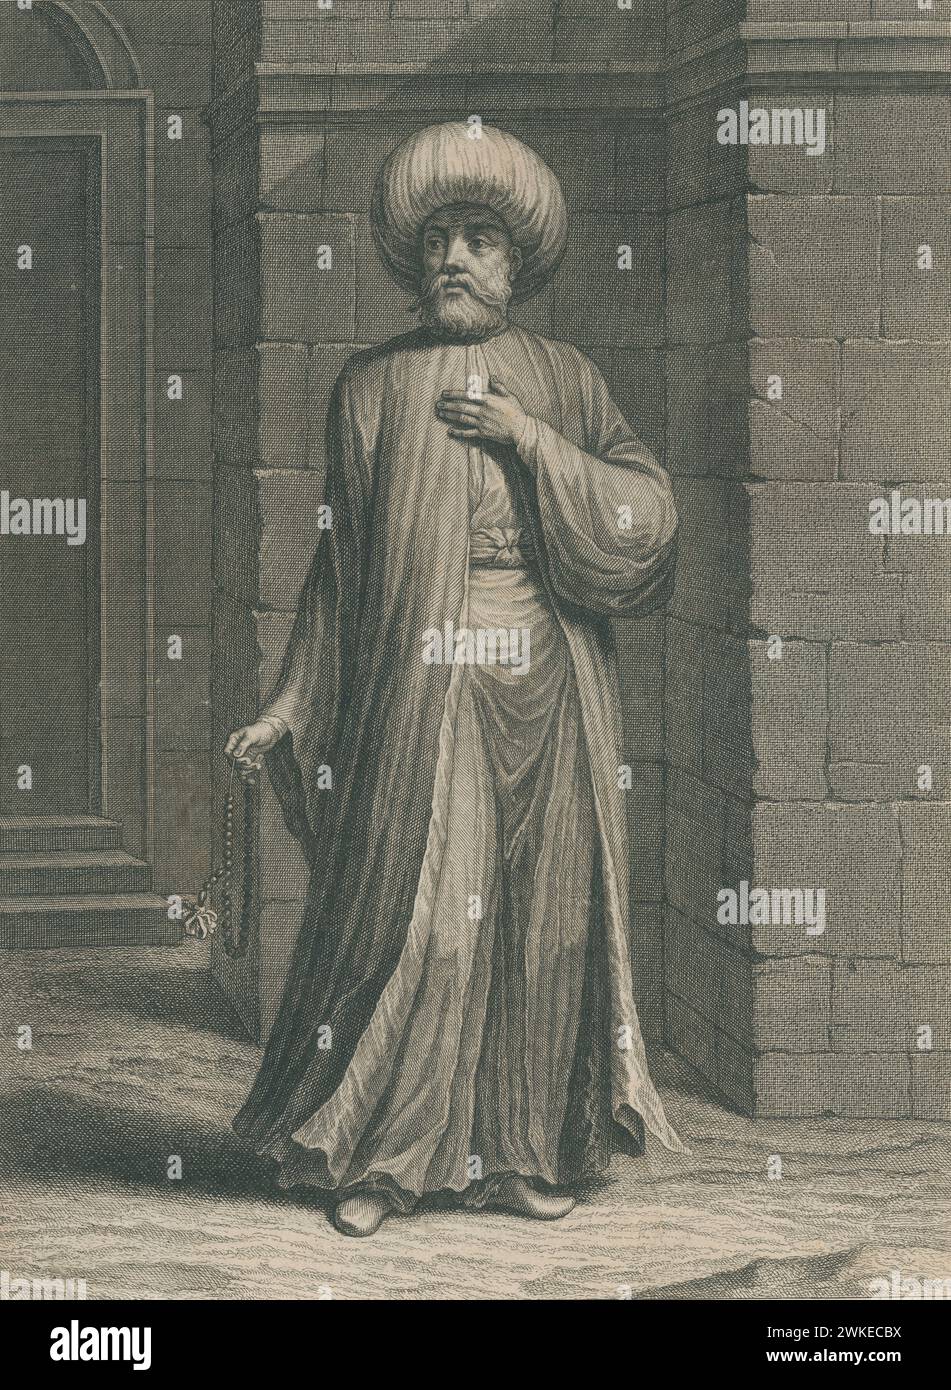 Imam, ministro religioso musulmán de una mezquita, Persona encargada de dirigir la oración colectiva. Grabado DE 1850. Stockfoto